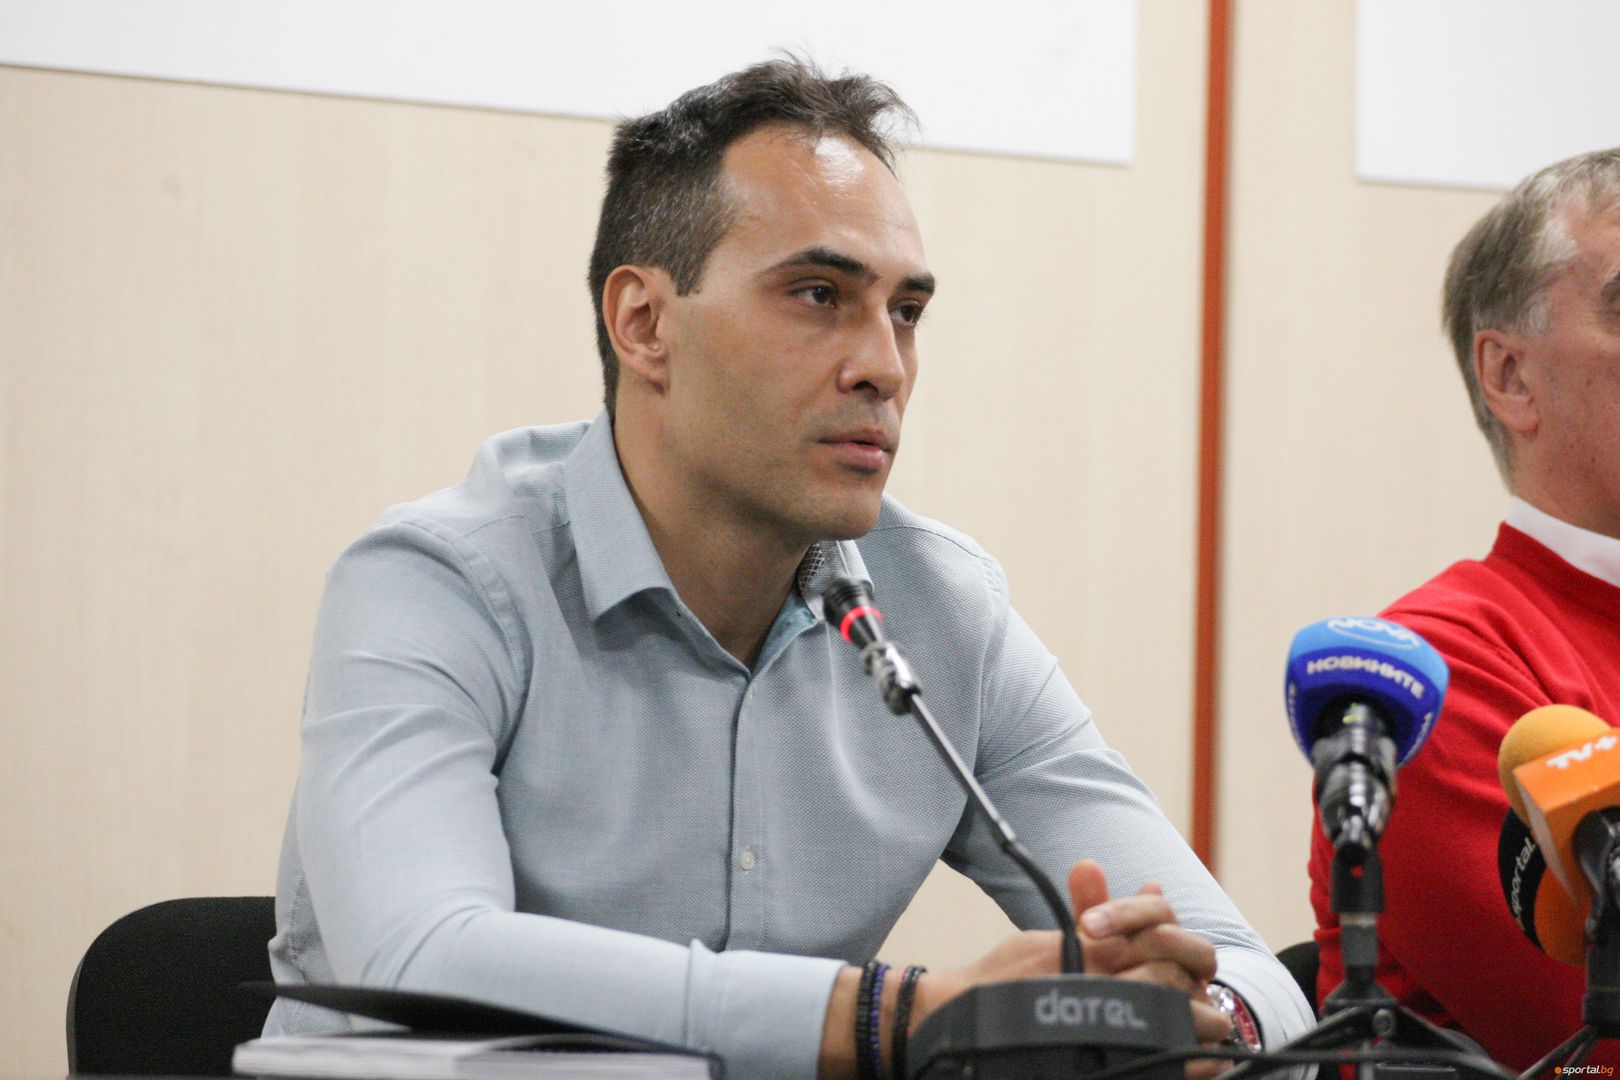 Пресконференция на селекционера на националният отбор по волейбол Силвано Пранди